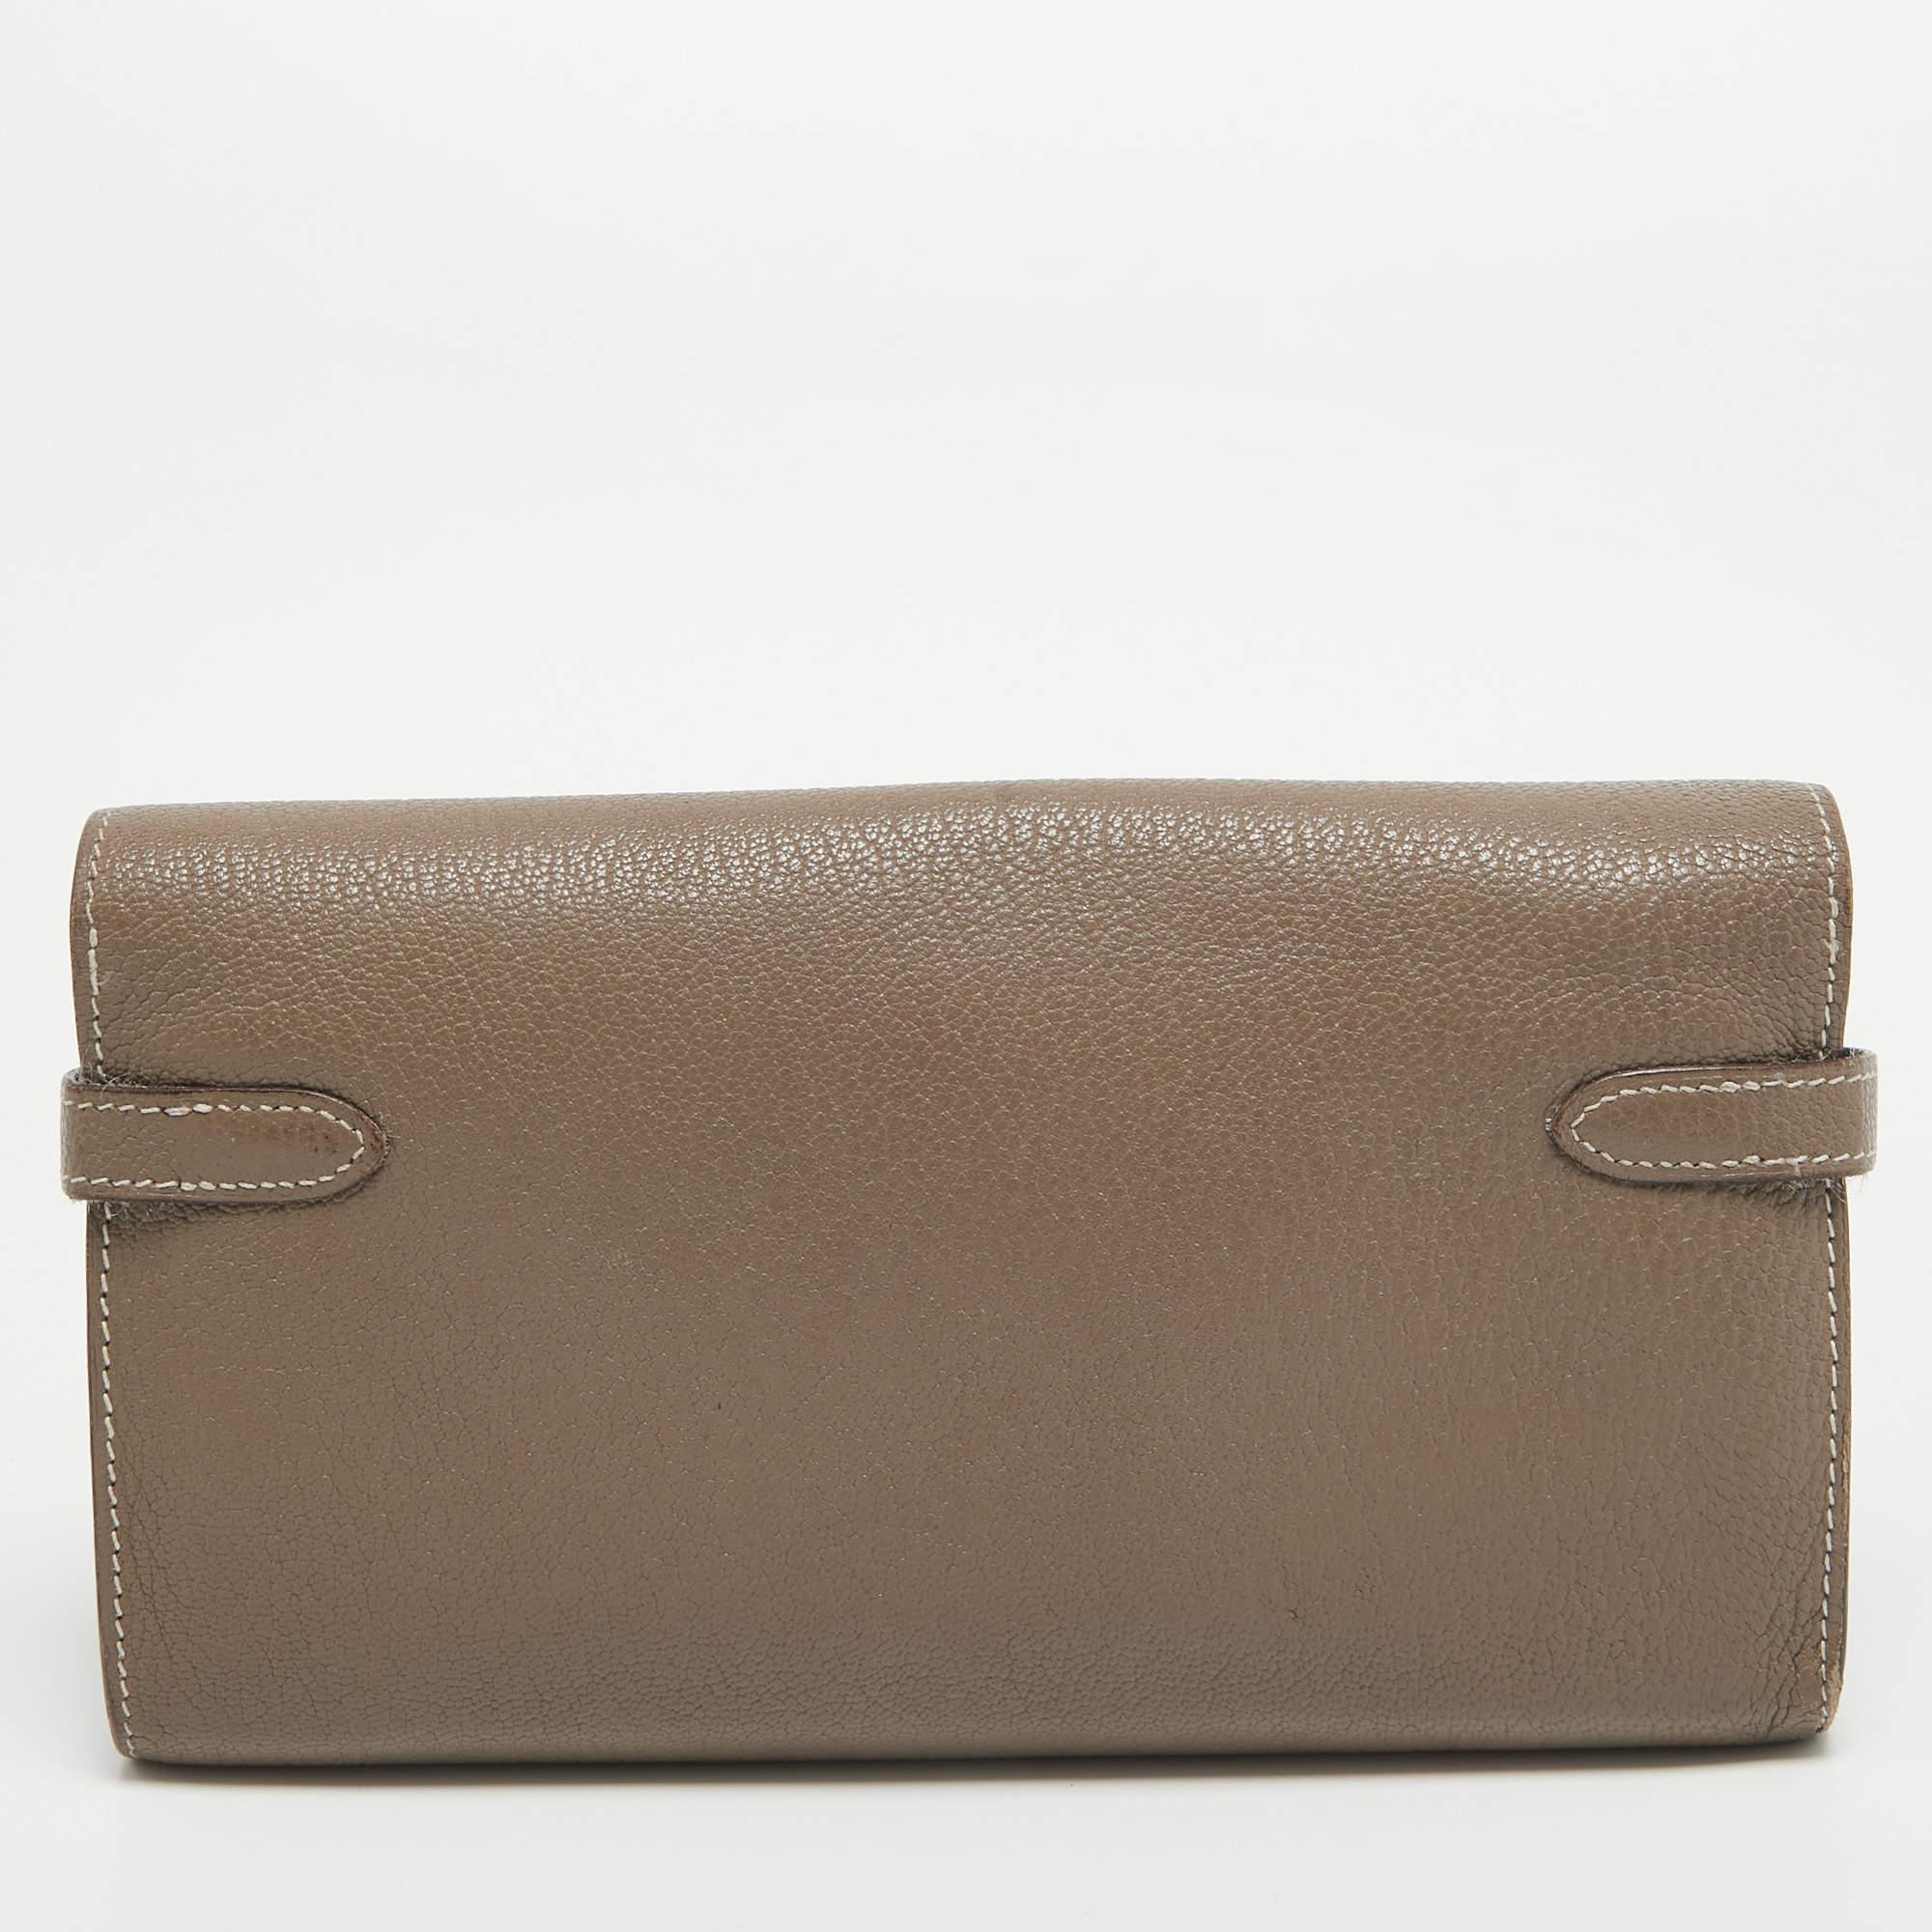 Diese stilvolle Hermes Kelly Classic Brieftasche bringt einen Hauch von Luxus und großem Stil mit sich. Sie ist perfekt verarbeitet, um Ihre Karten und Ihr Bargeld ordentlich zu verstauen.

